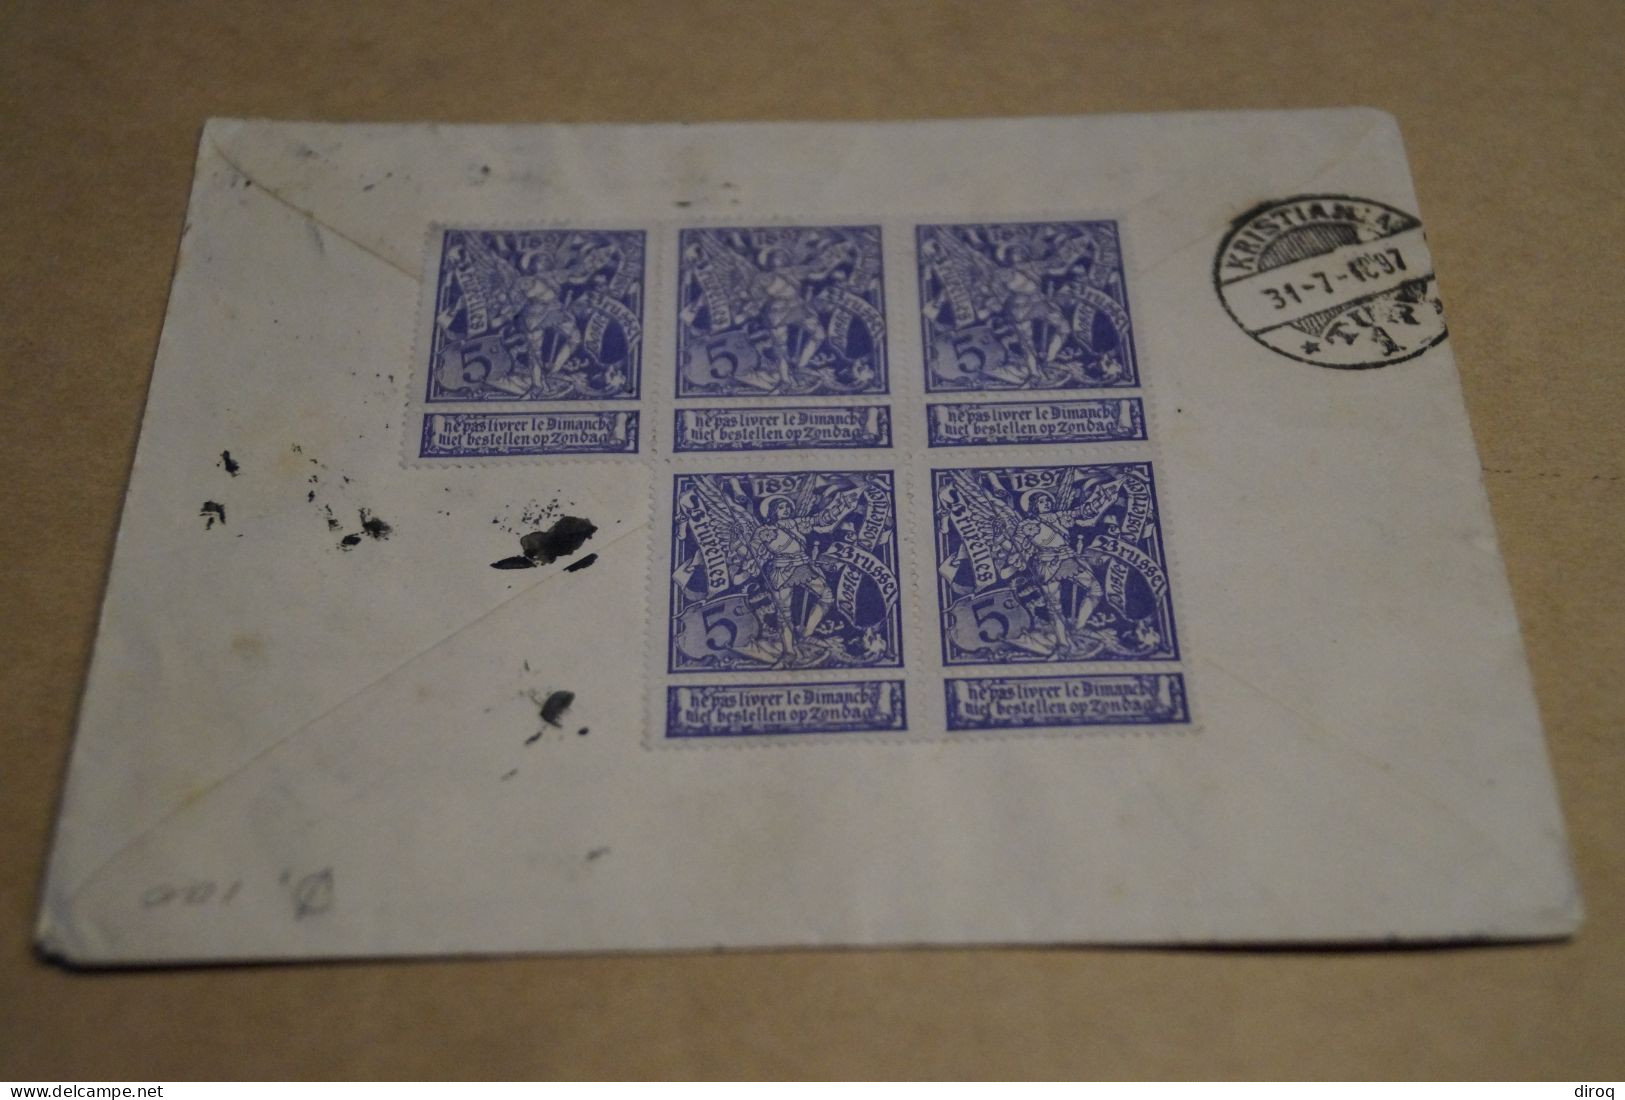 Superbe envoi Belgique Kristiana,envoyé à William P.Ward,8 timbres 1897,magnifiques oblitérations,pour collection